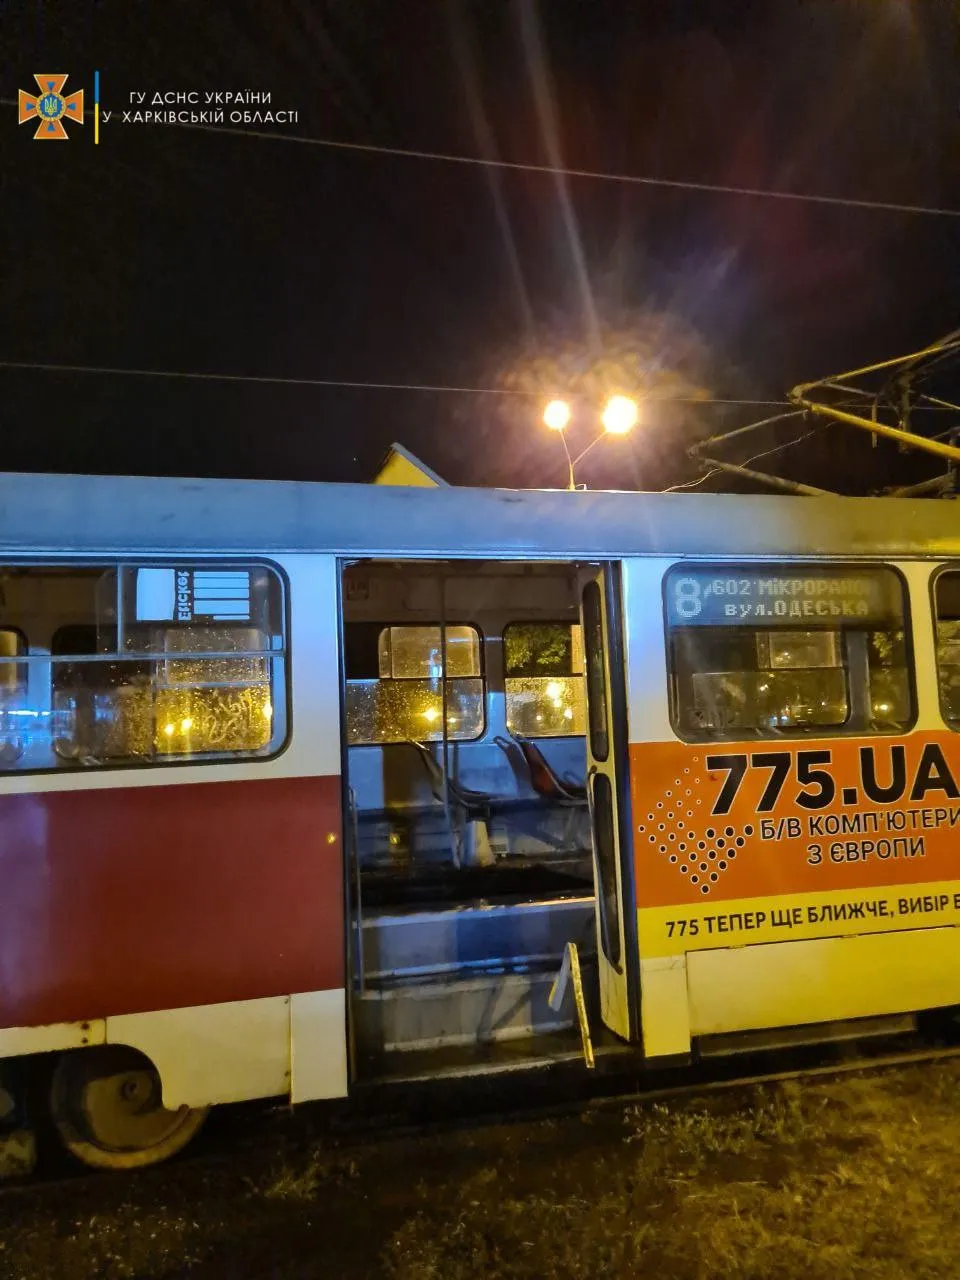 Пожежа в трамваї Харків Новини 2 серпня 2021 Ніхто не постраждав